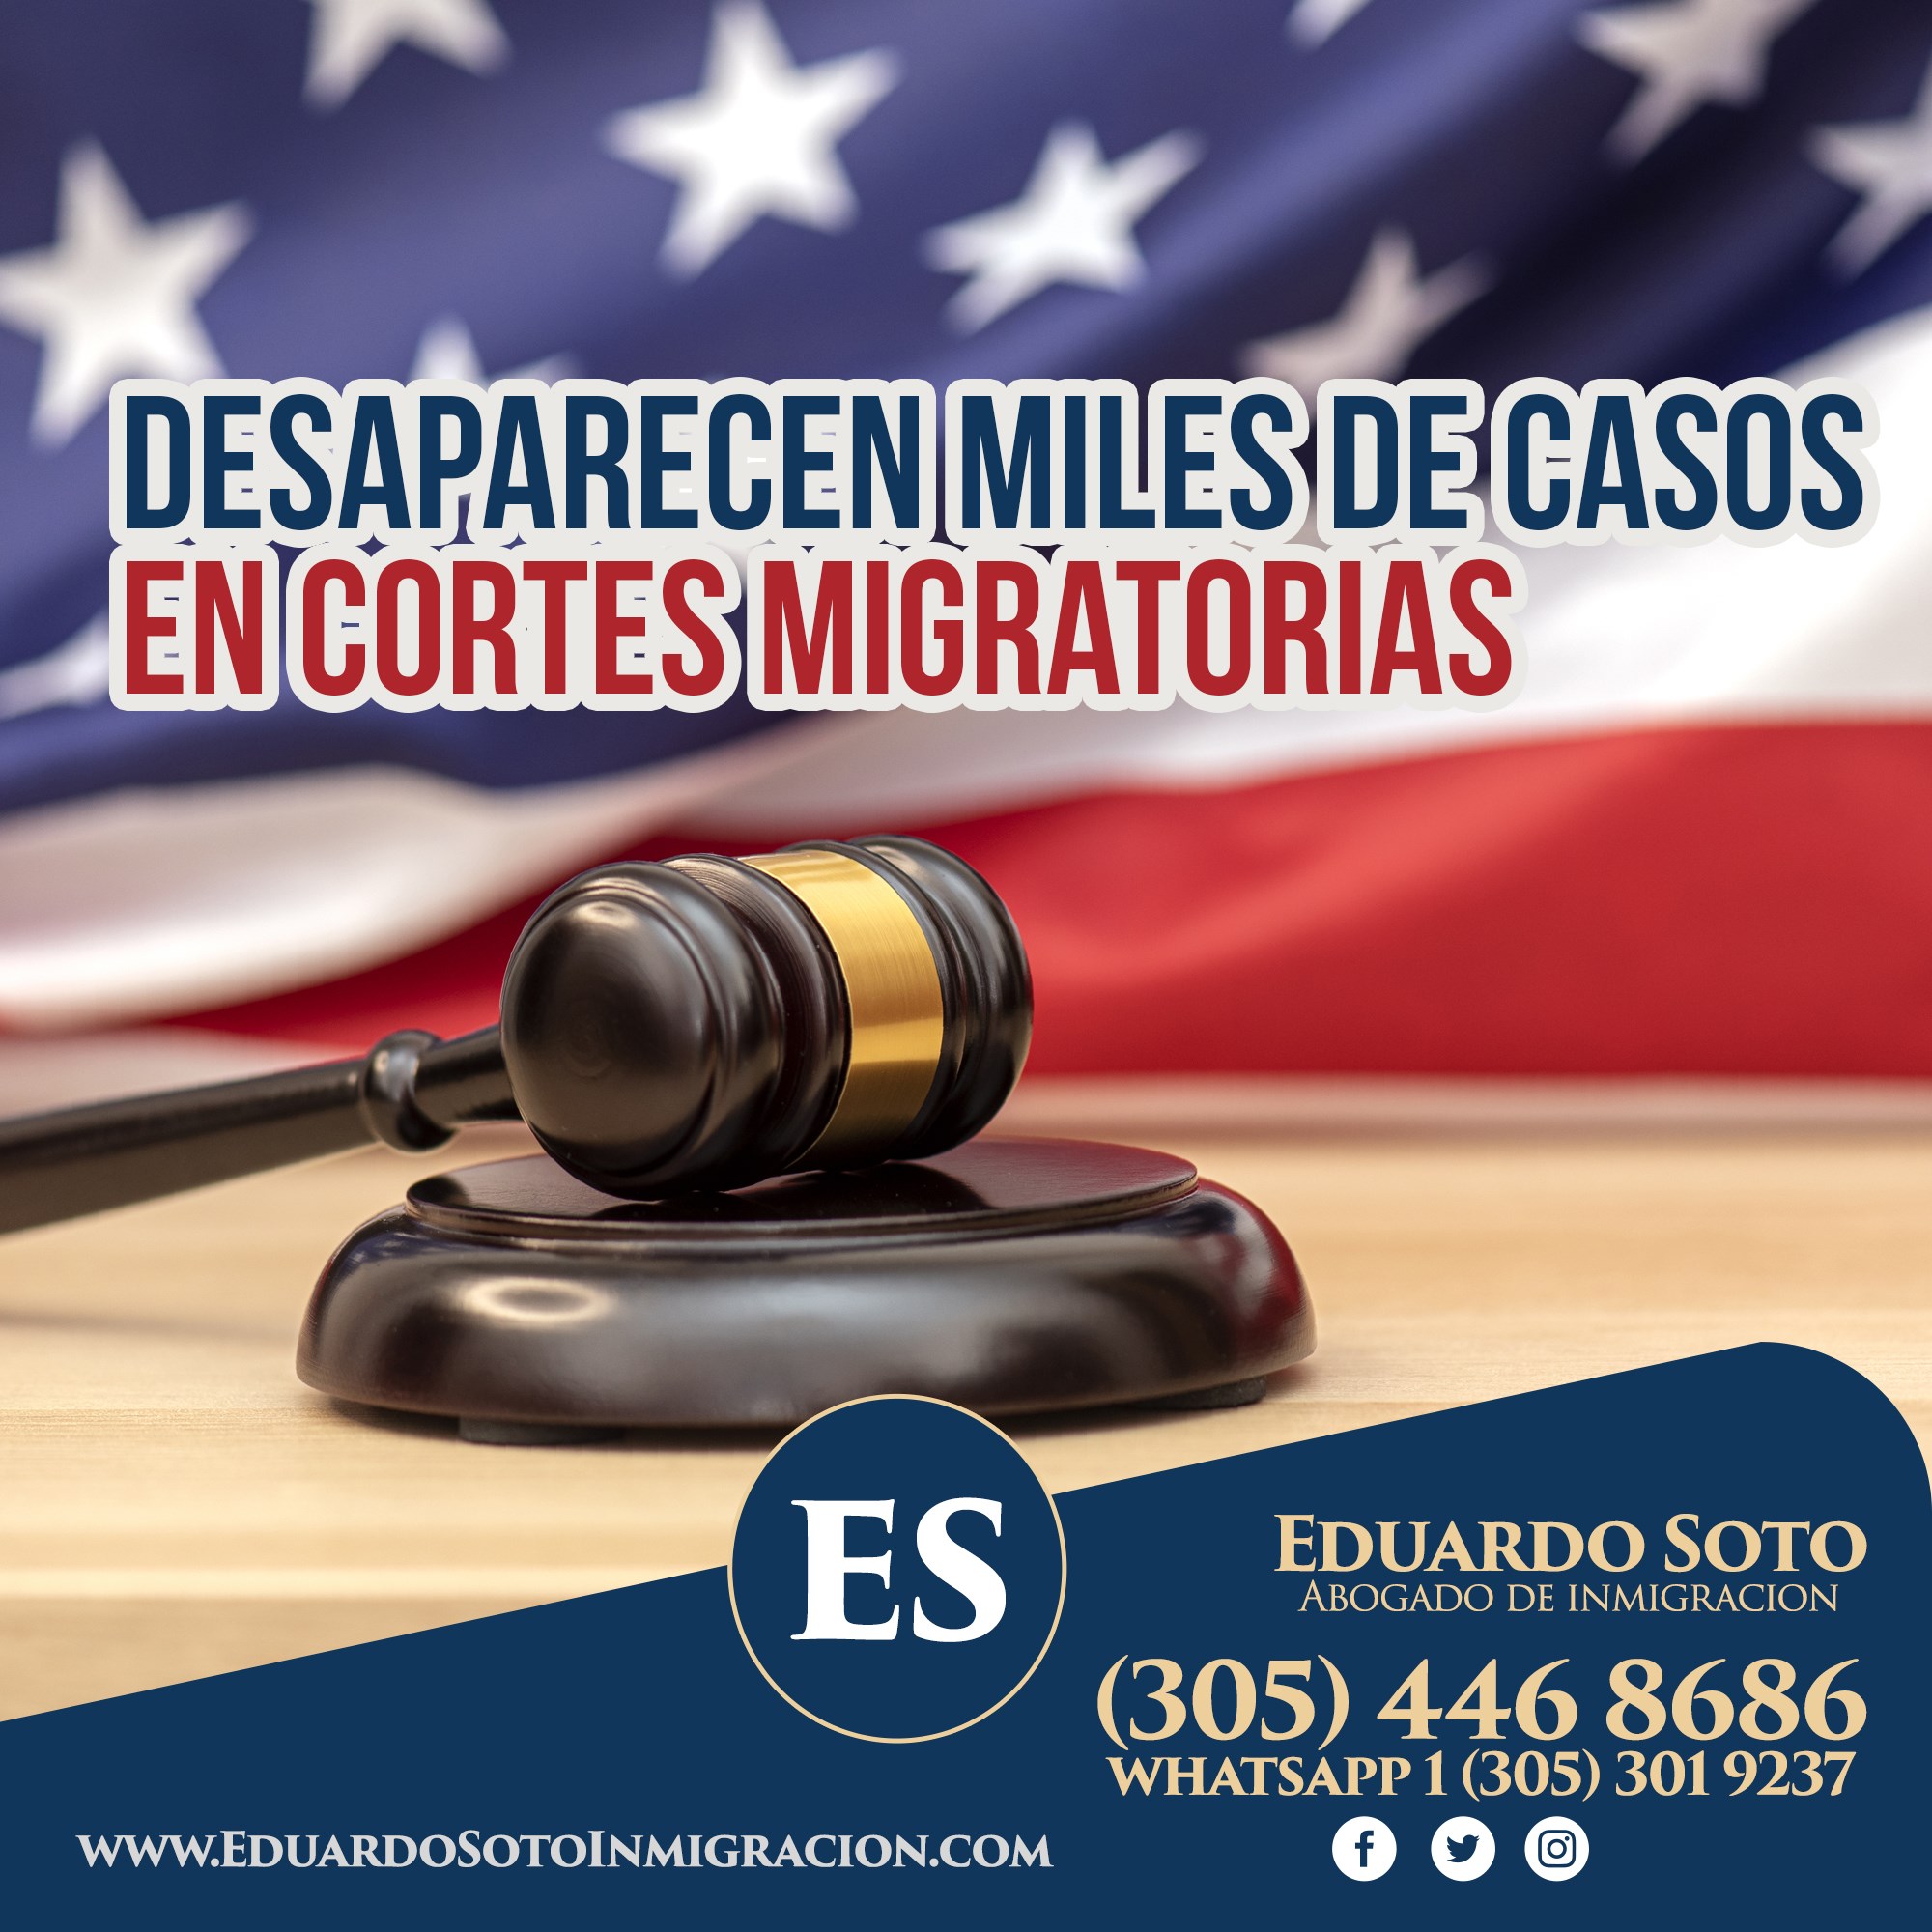 Desaparecen miles de casos en Cortes migratorias